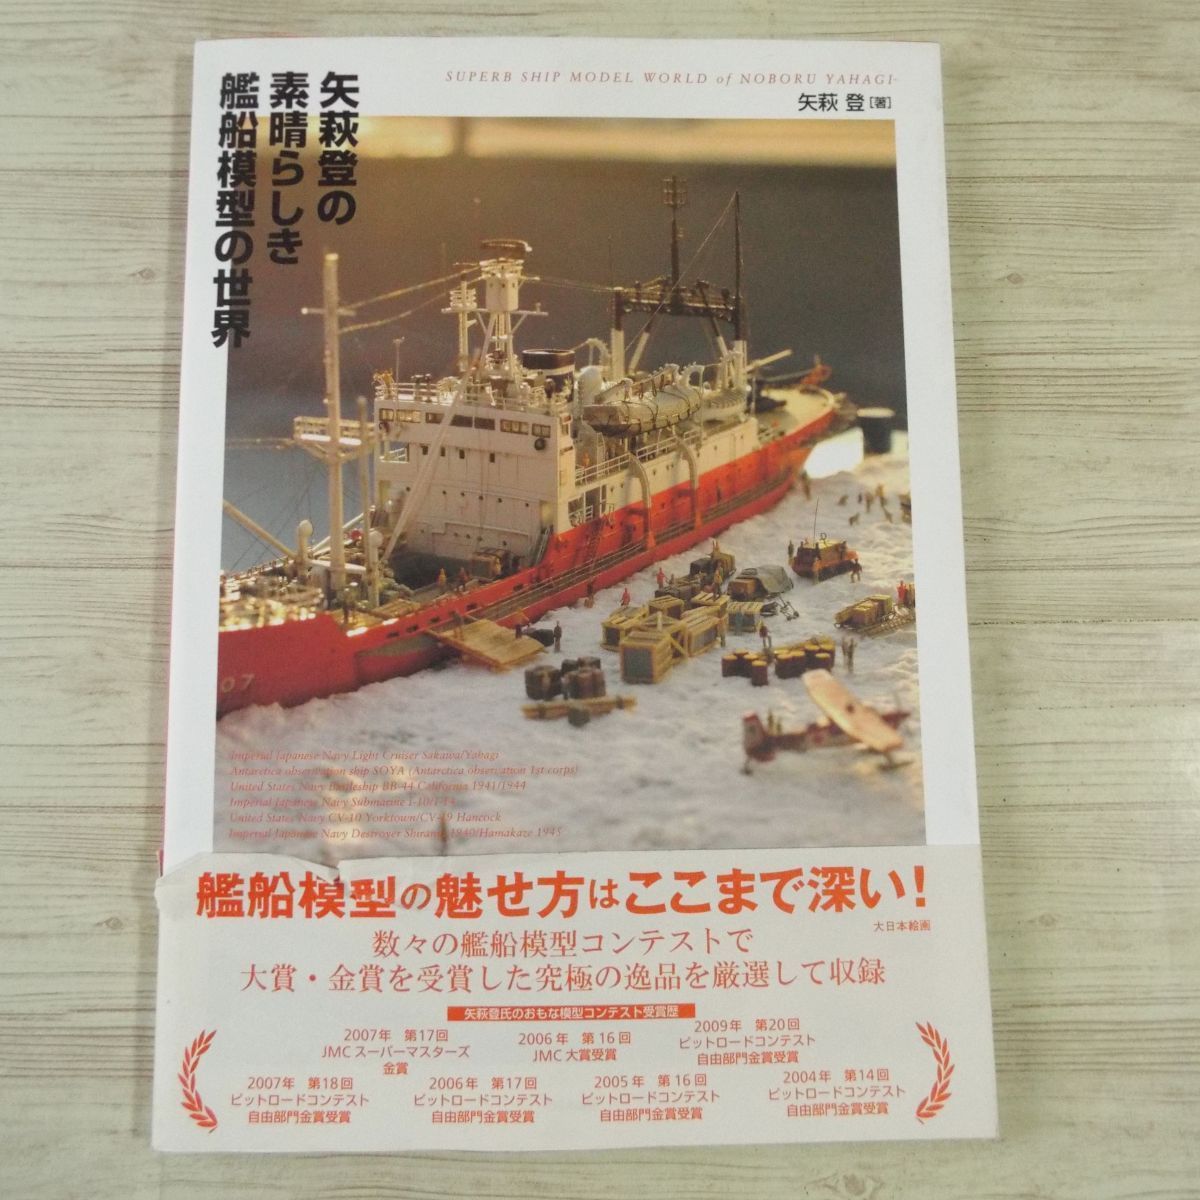 プラモ制作[矢萩登の素晴らしき艦船模型の世界] 大日本絵画_画像1